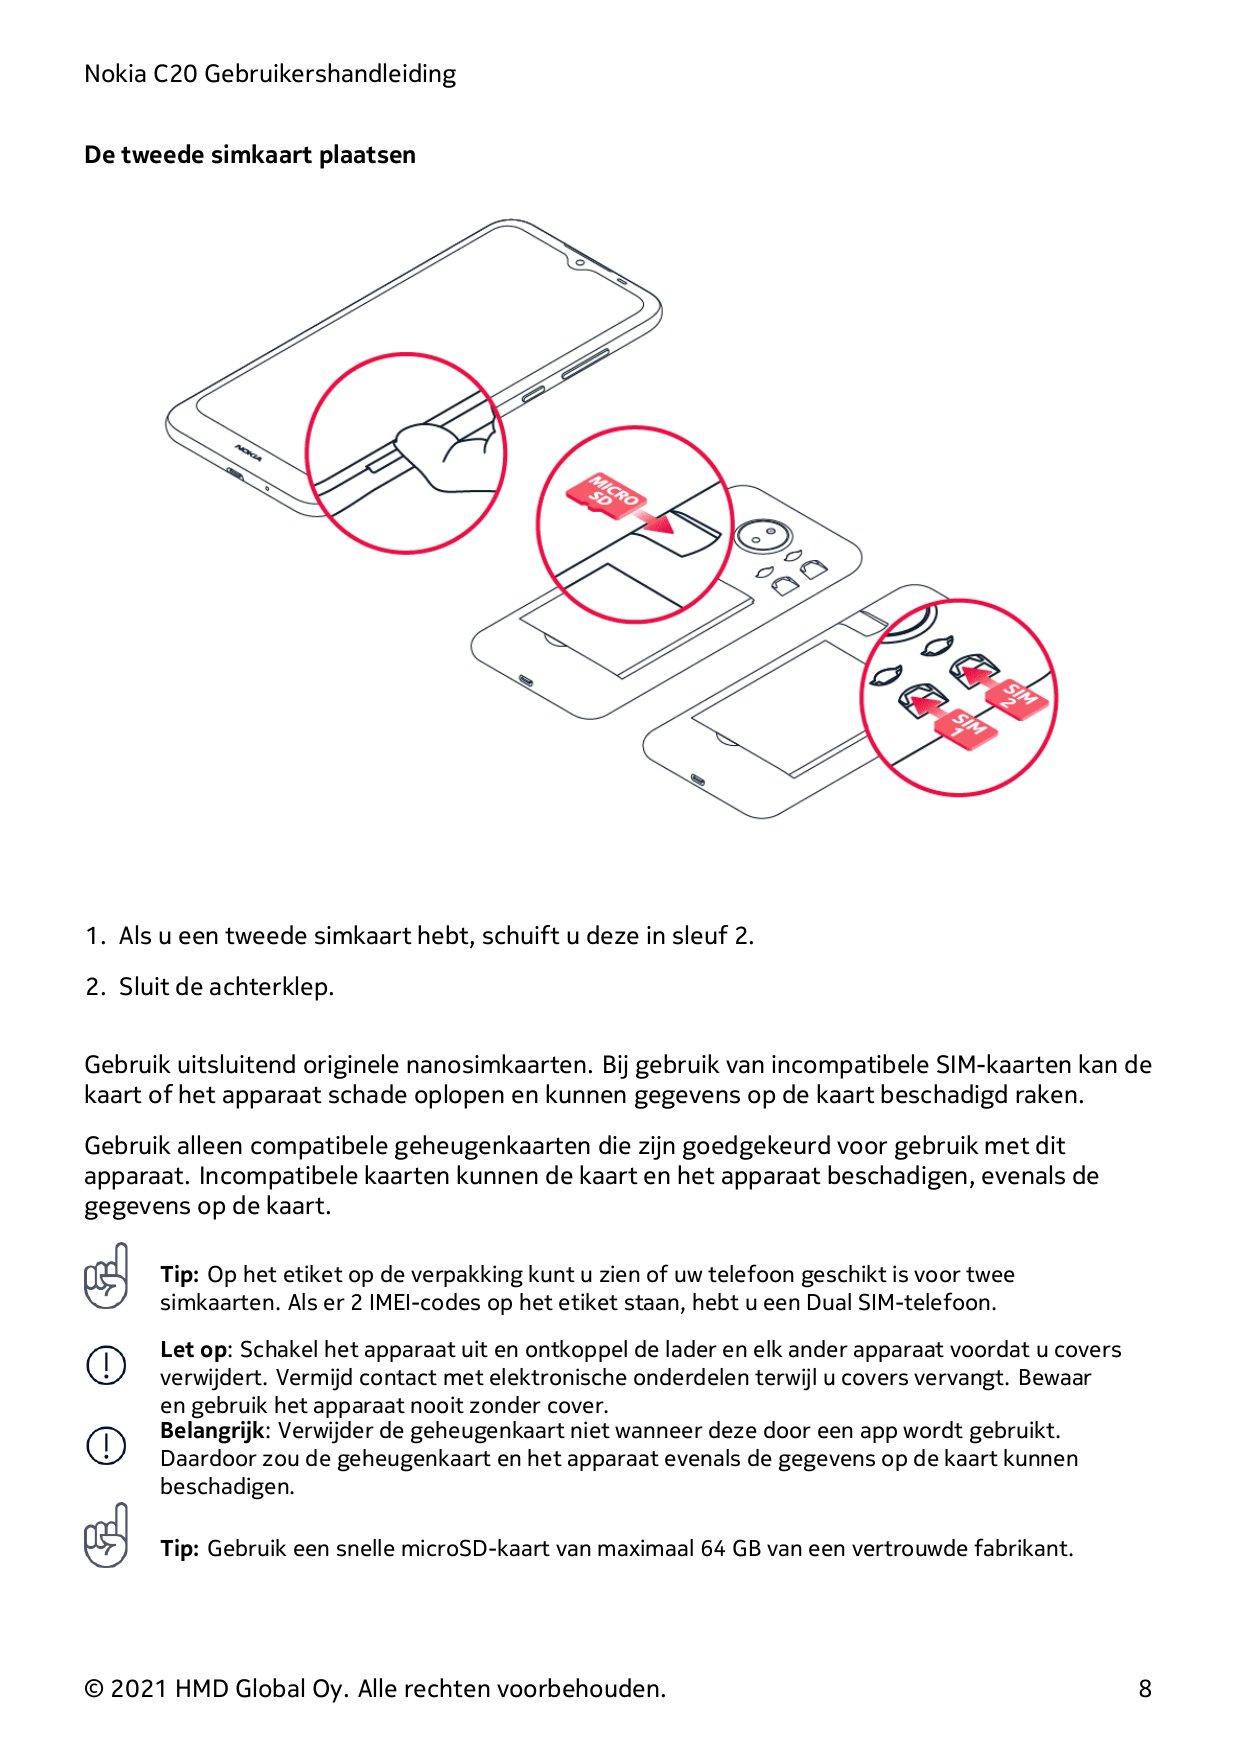 Nokia C20 GebruikershandleidingDe tweede simkaart plaatsen1. Als u een tweede simkaart hebt, schuift u deze in sleuf 2.2. Sluit 